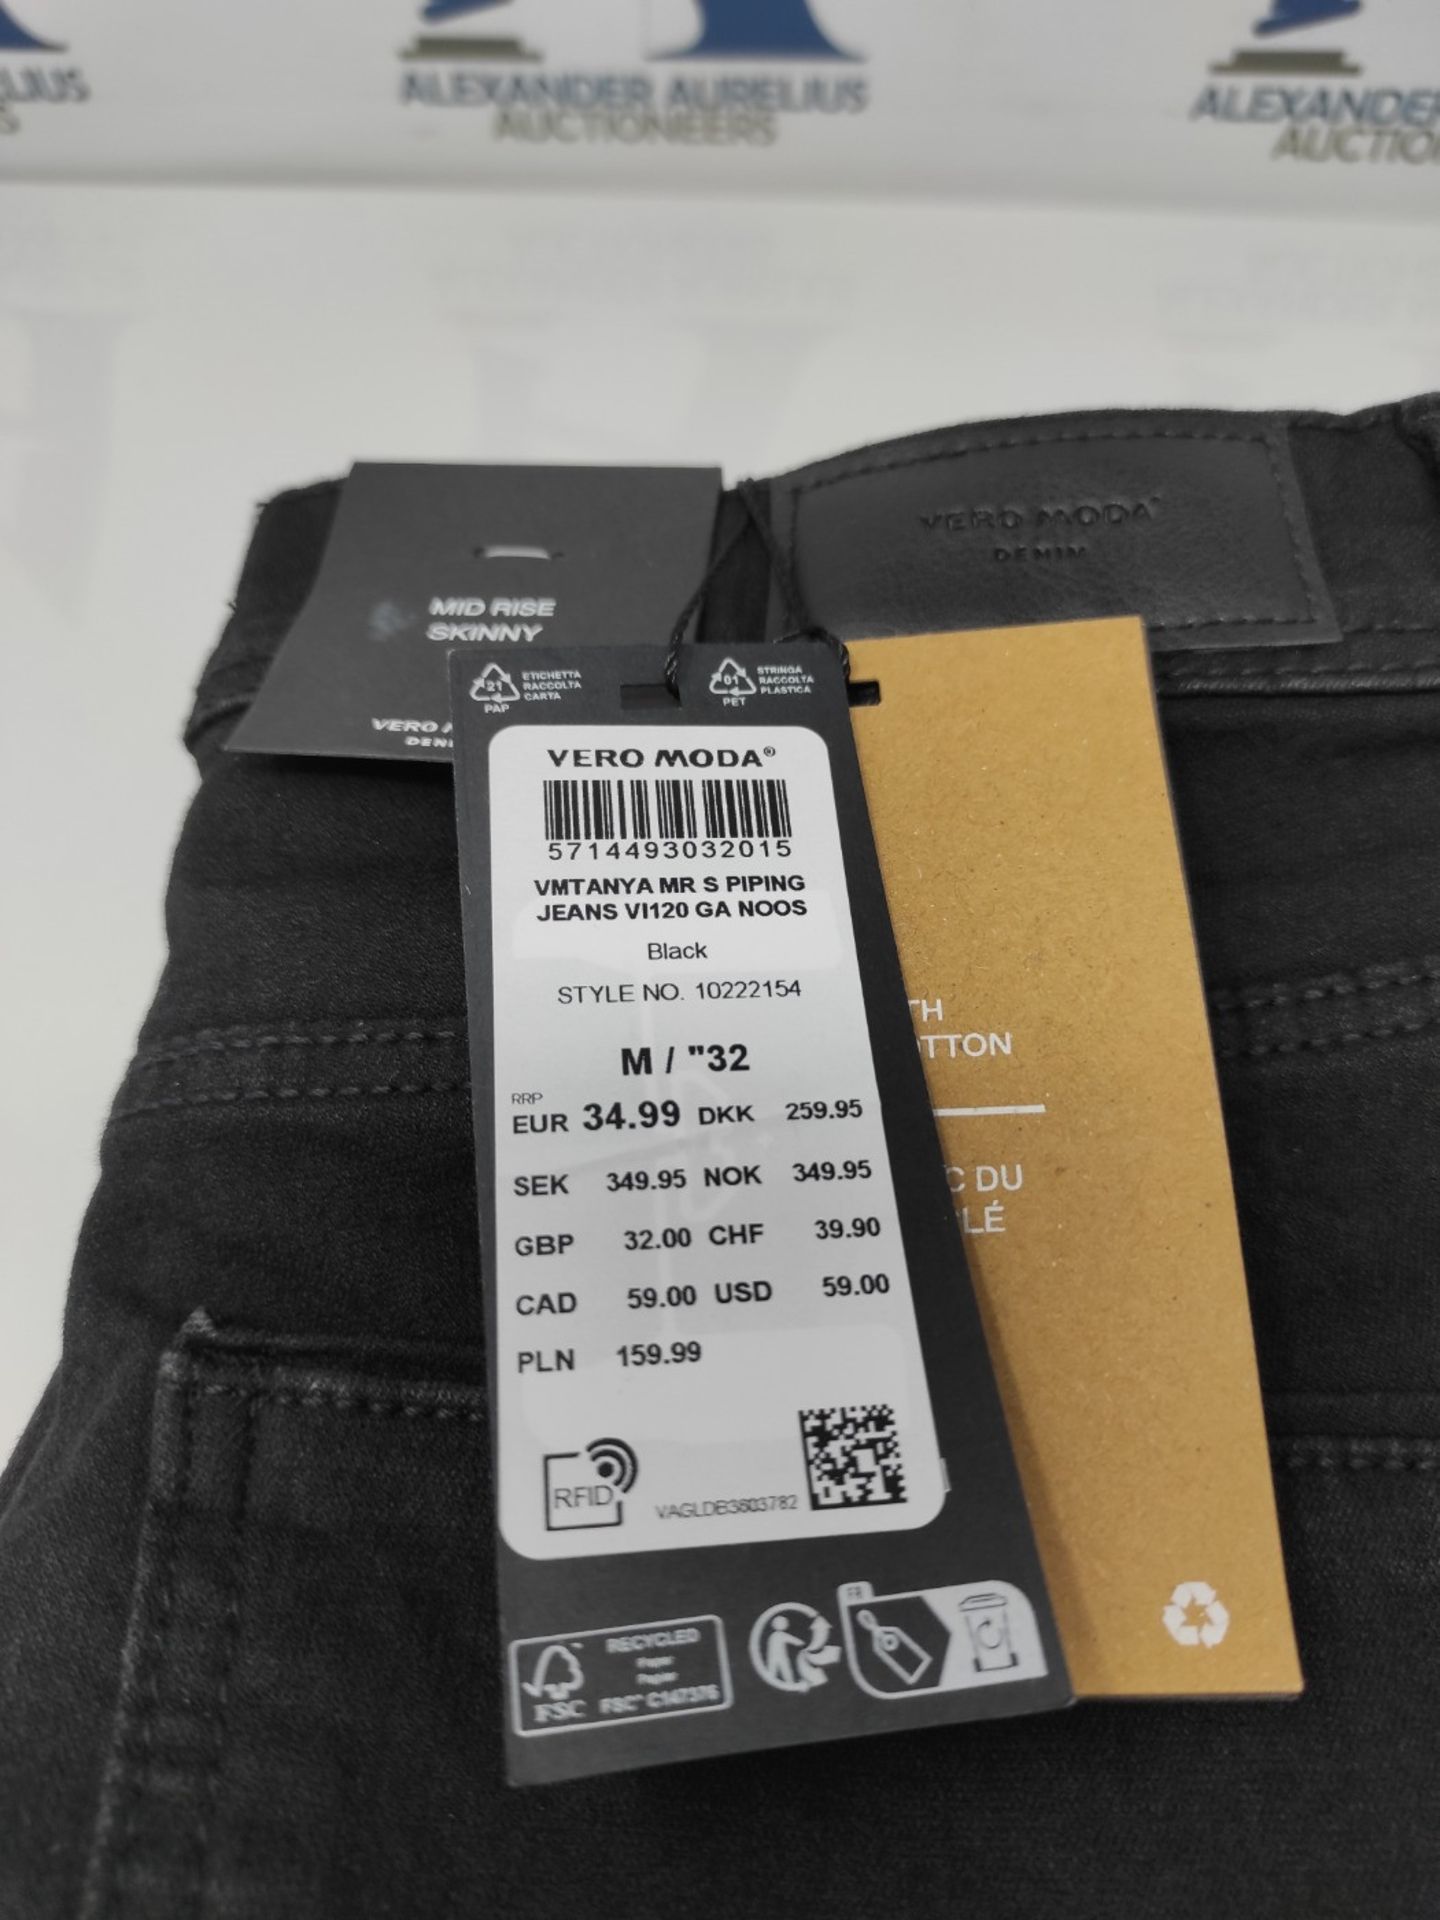 Vero Moda VMTANYA Mr S Piping Jeans VI120 GA Noos Skinny, Black (Black Black), 38/ L32 - Image 3 of 3